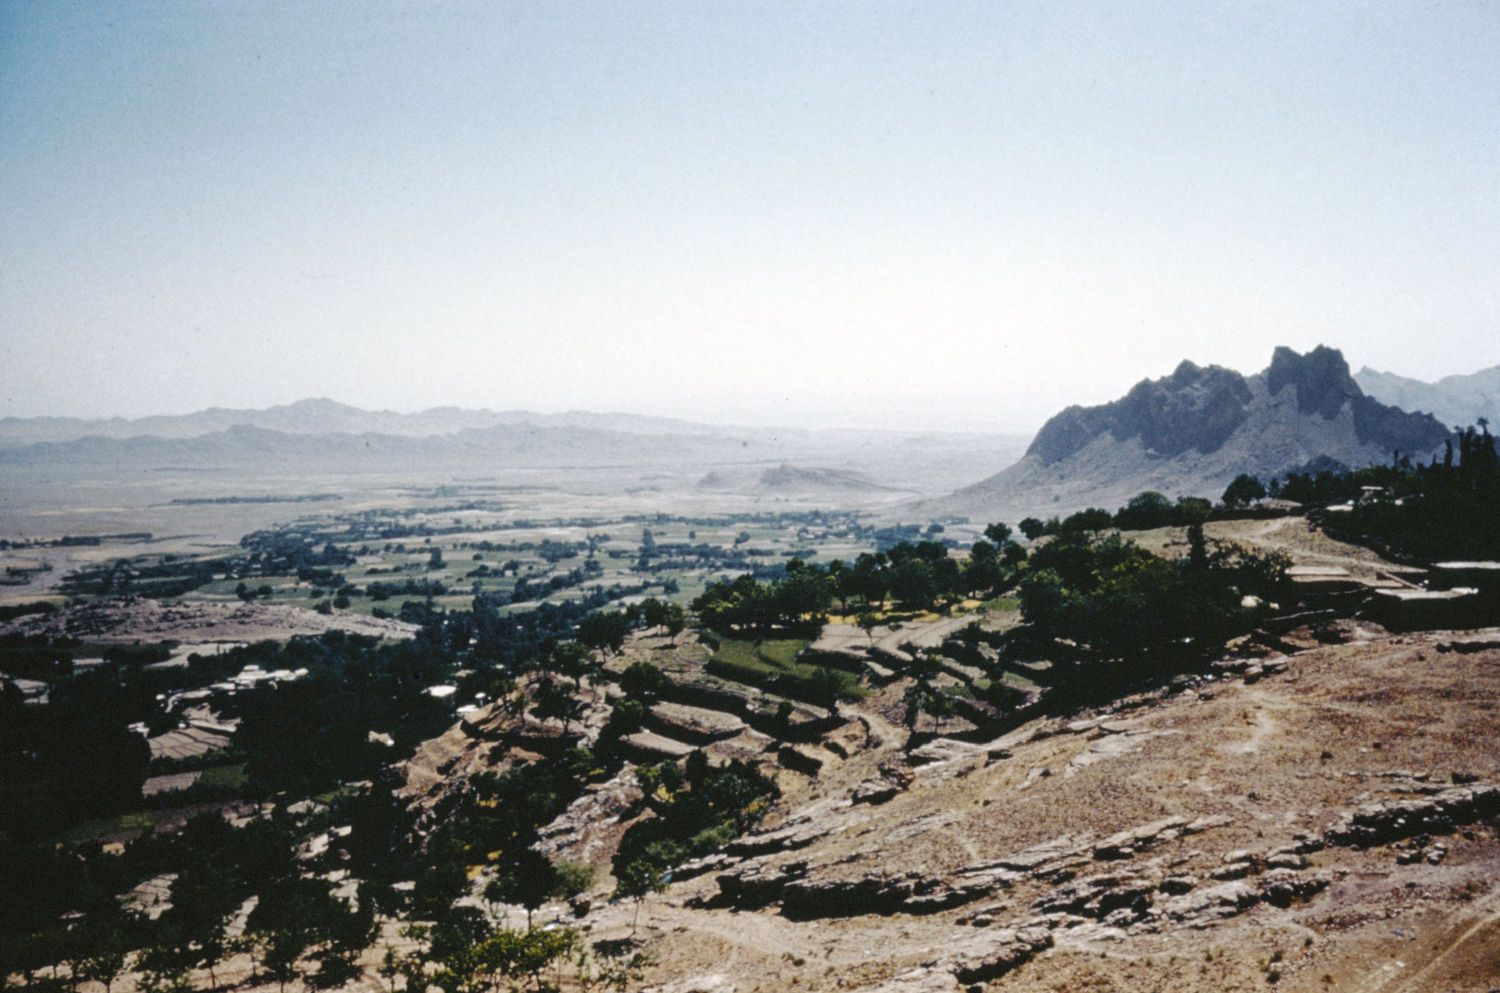 View of landscape around Niyasar, Iran.